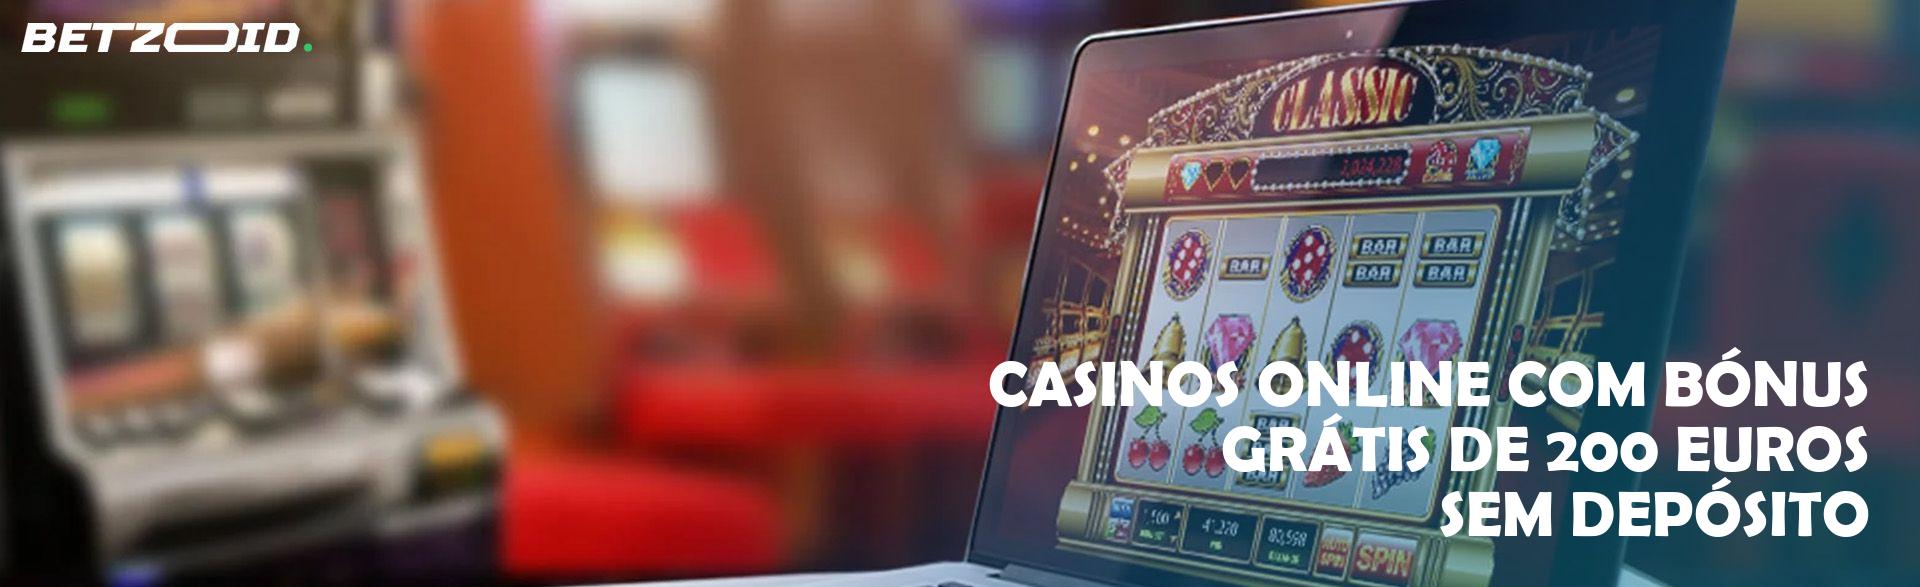 Casinos Online com Bónus Grátis de 200 Euros sem Depósito.